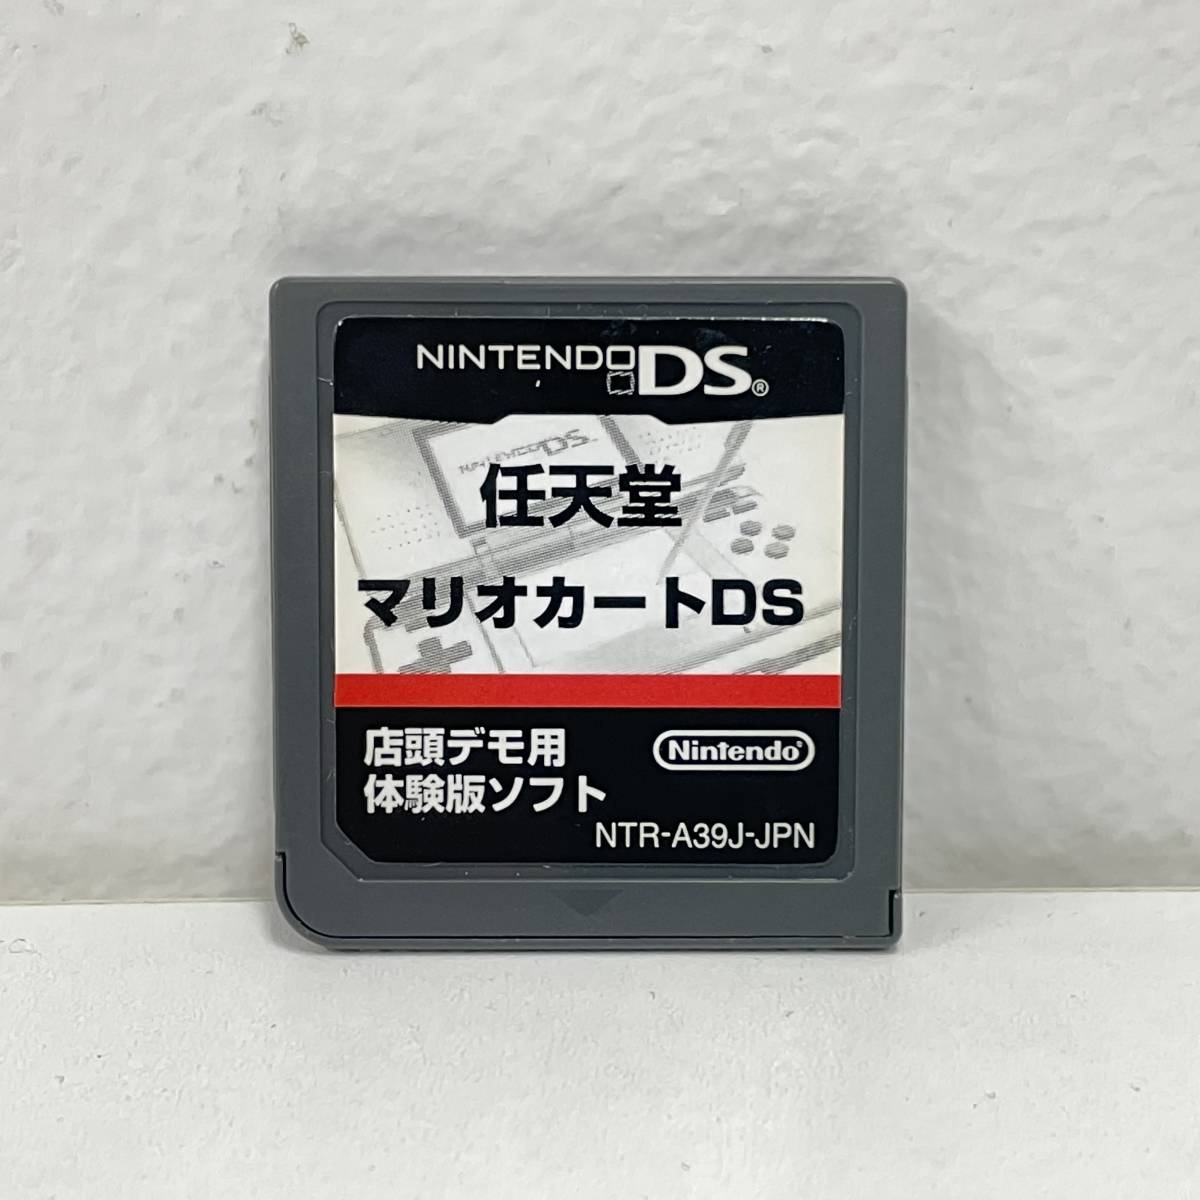 ソフトのみ ニンテンドーDS Nintendo マリオカートDS 店頭デモ用 体験版ソフト NTR-A39J-JPN NTR-005 PAT. PEND. ゲーム ｍario 任天堂